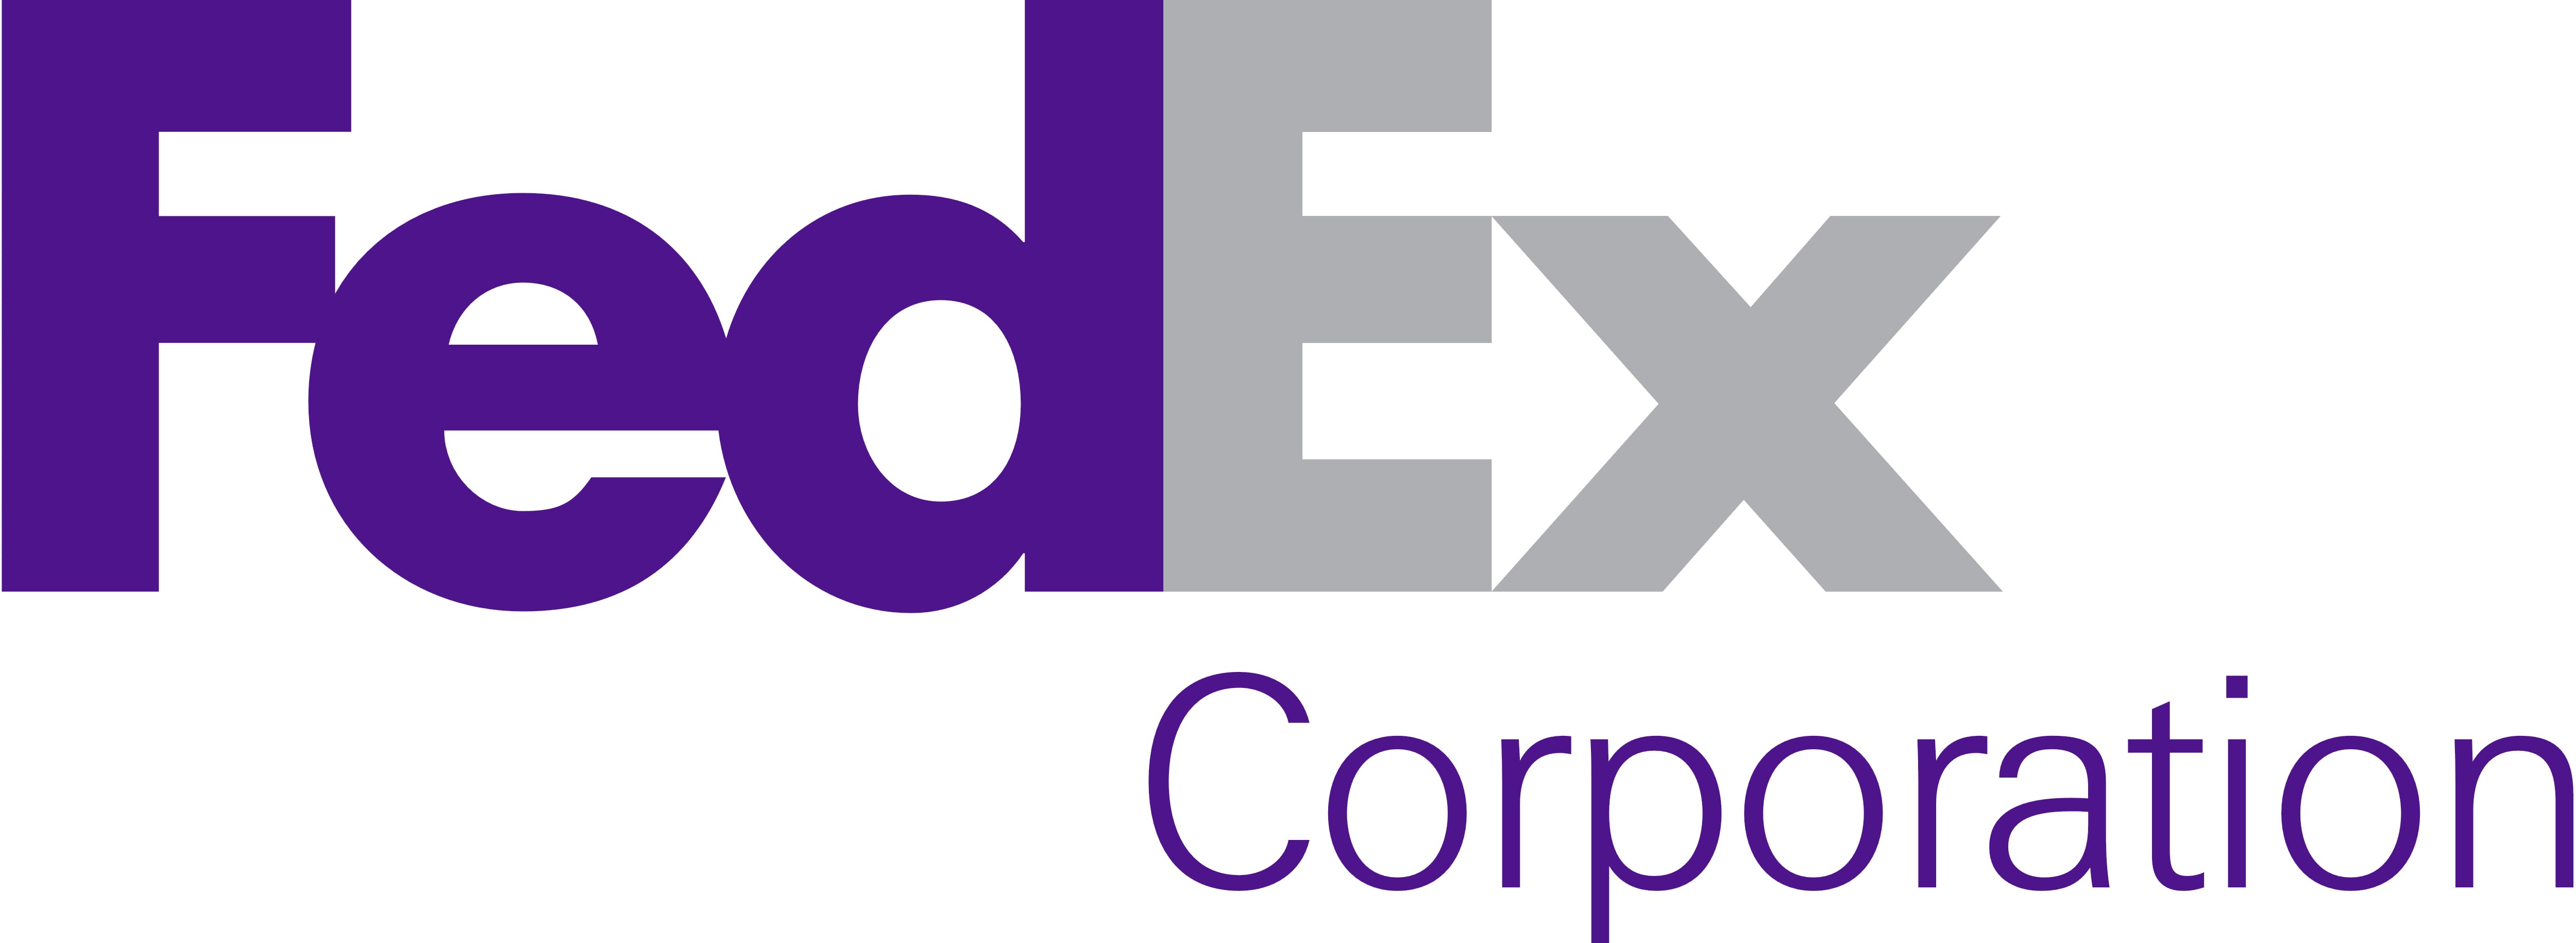 FedEx Loogo Logo - fedex logo png 8